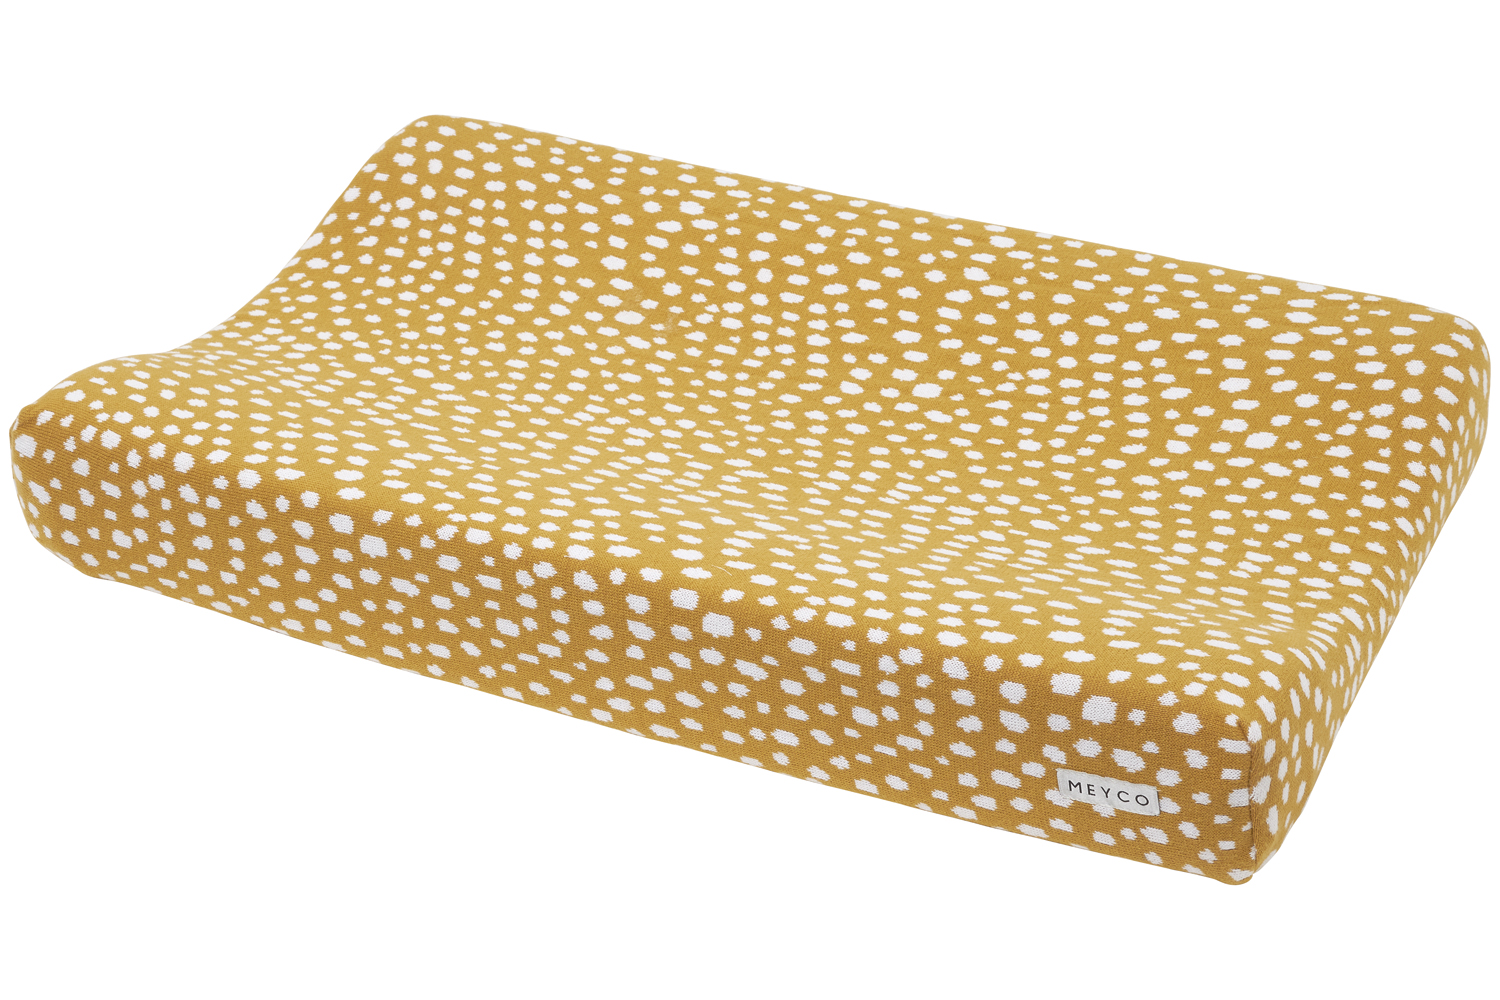 Wickelauflagenbezug Cheetah - honey gold - 50x70cm